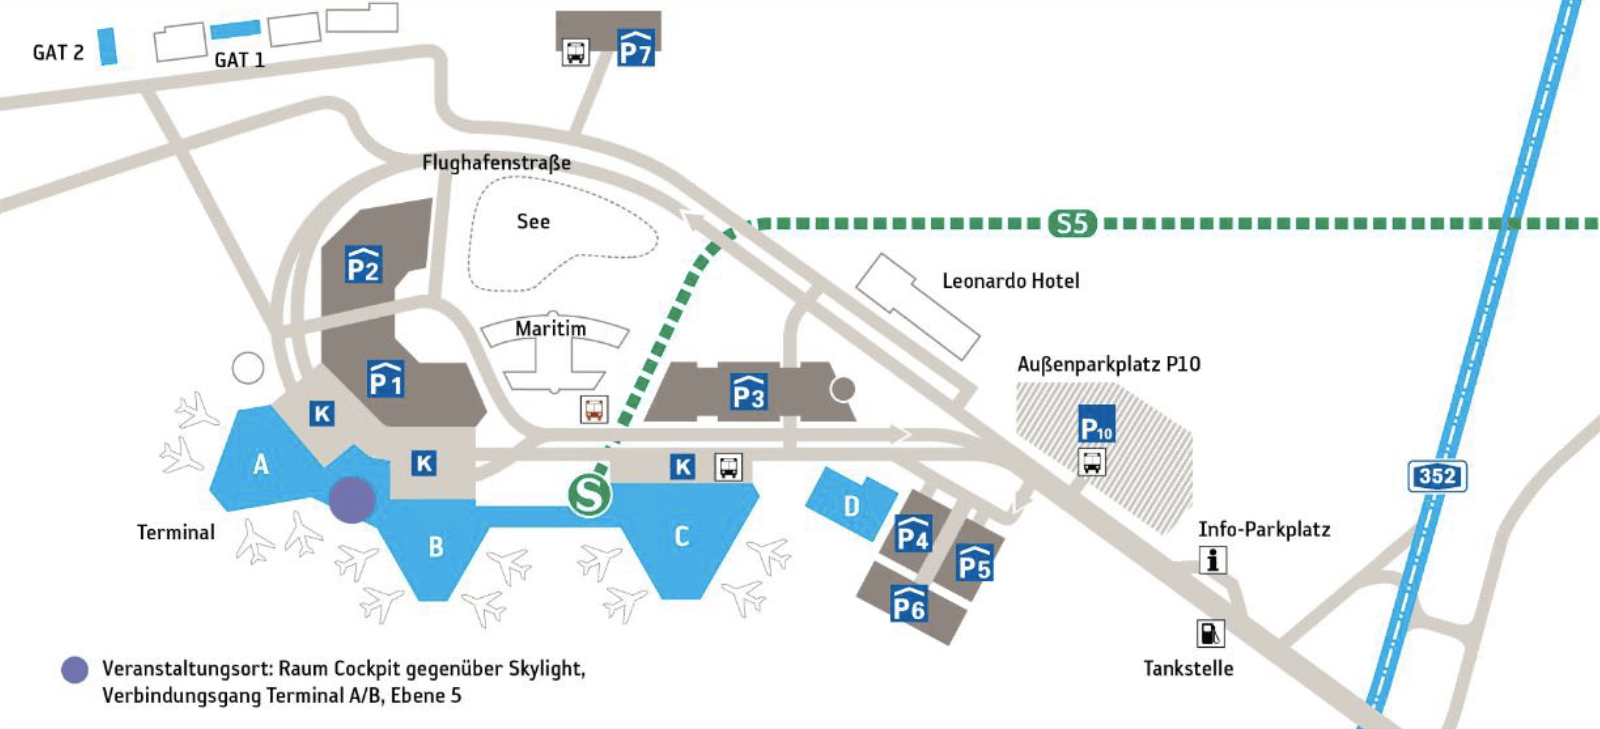 Flughafen Hannover >Parken, Webcam, Flugplan, Hotel, Flugradar